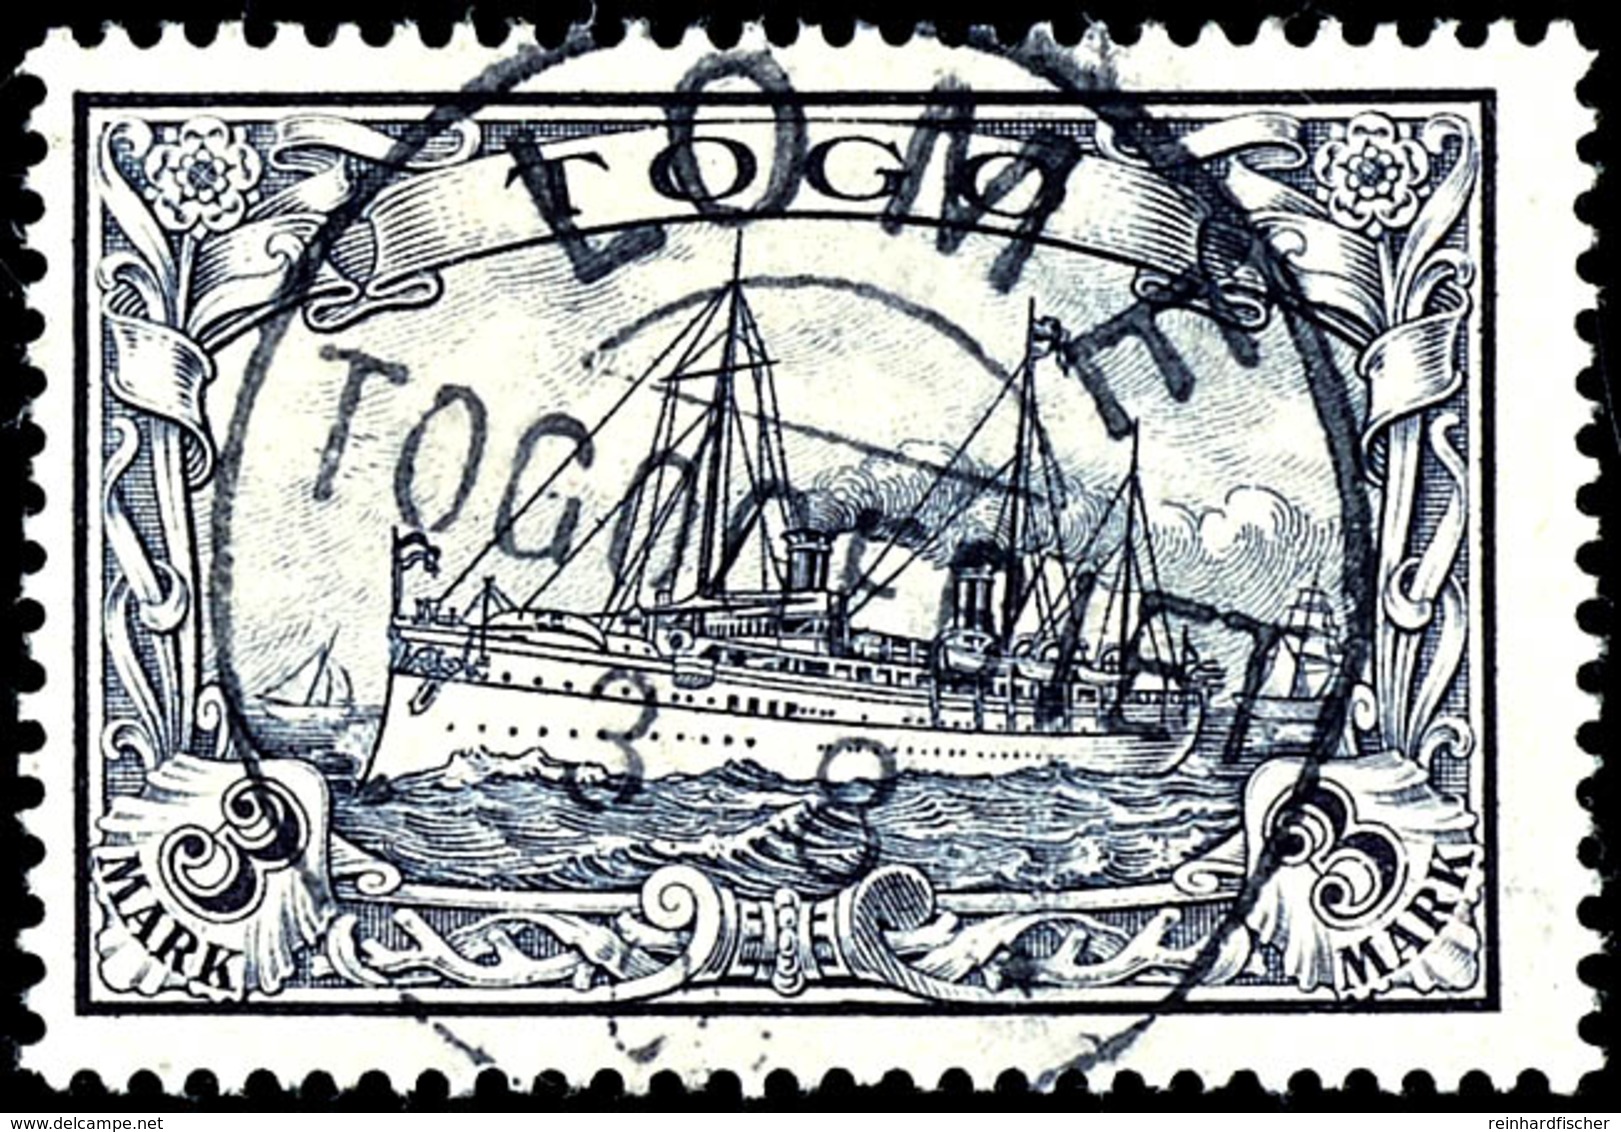 1 Und 2 Mark Auf Briefstück, 3 Mark Gestempelt, Kabinett, Michel 345,-, Katalog: 16/18 BS - Togo